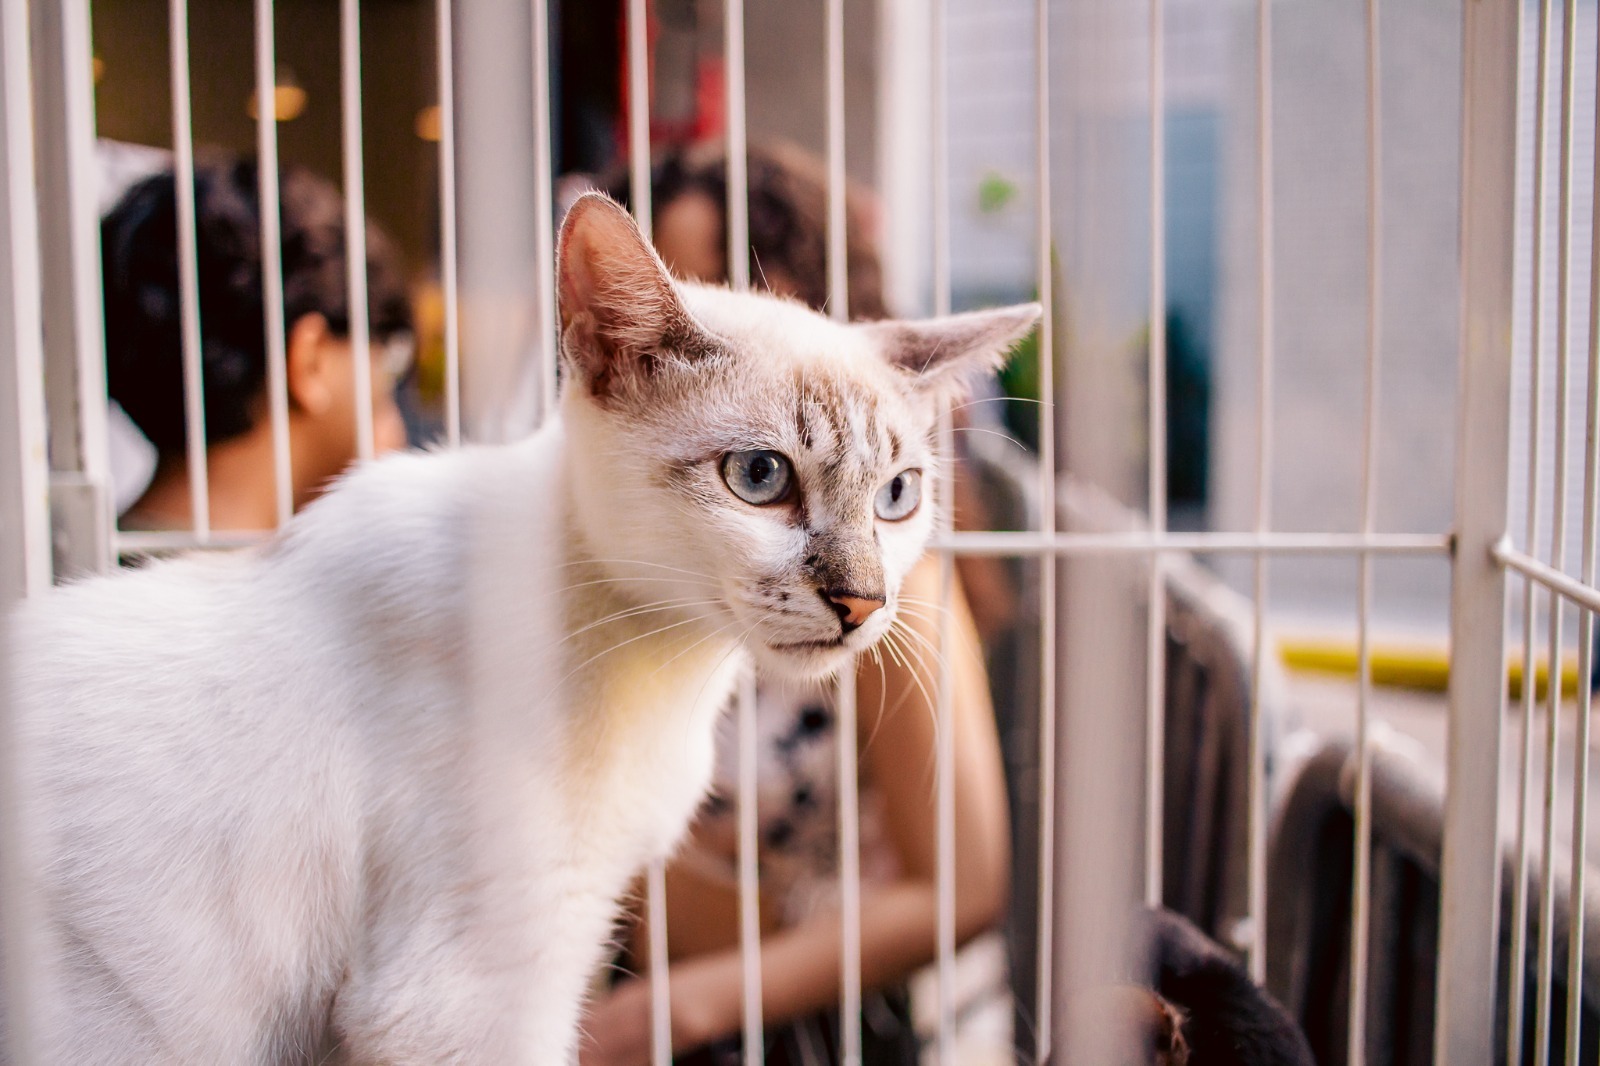 RioMar Aracaju realiza a 36ª campanha de adoção consciente, em busca de tutores para cães e gatos abandonados